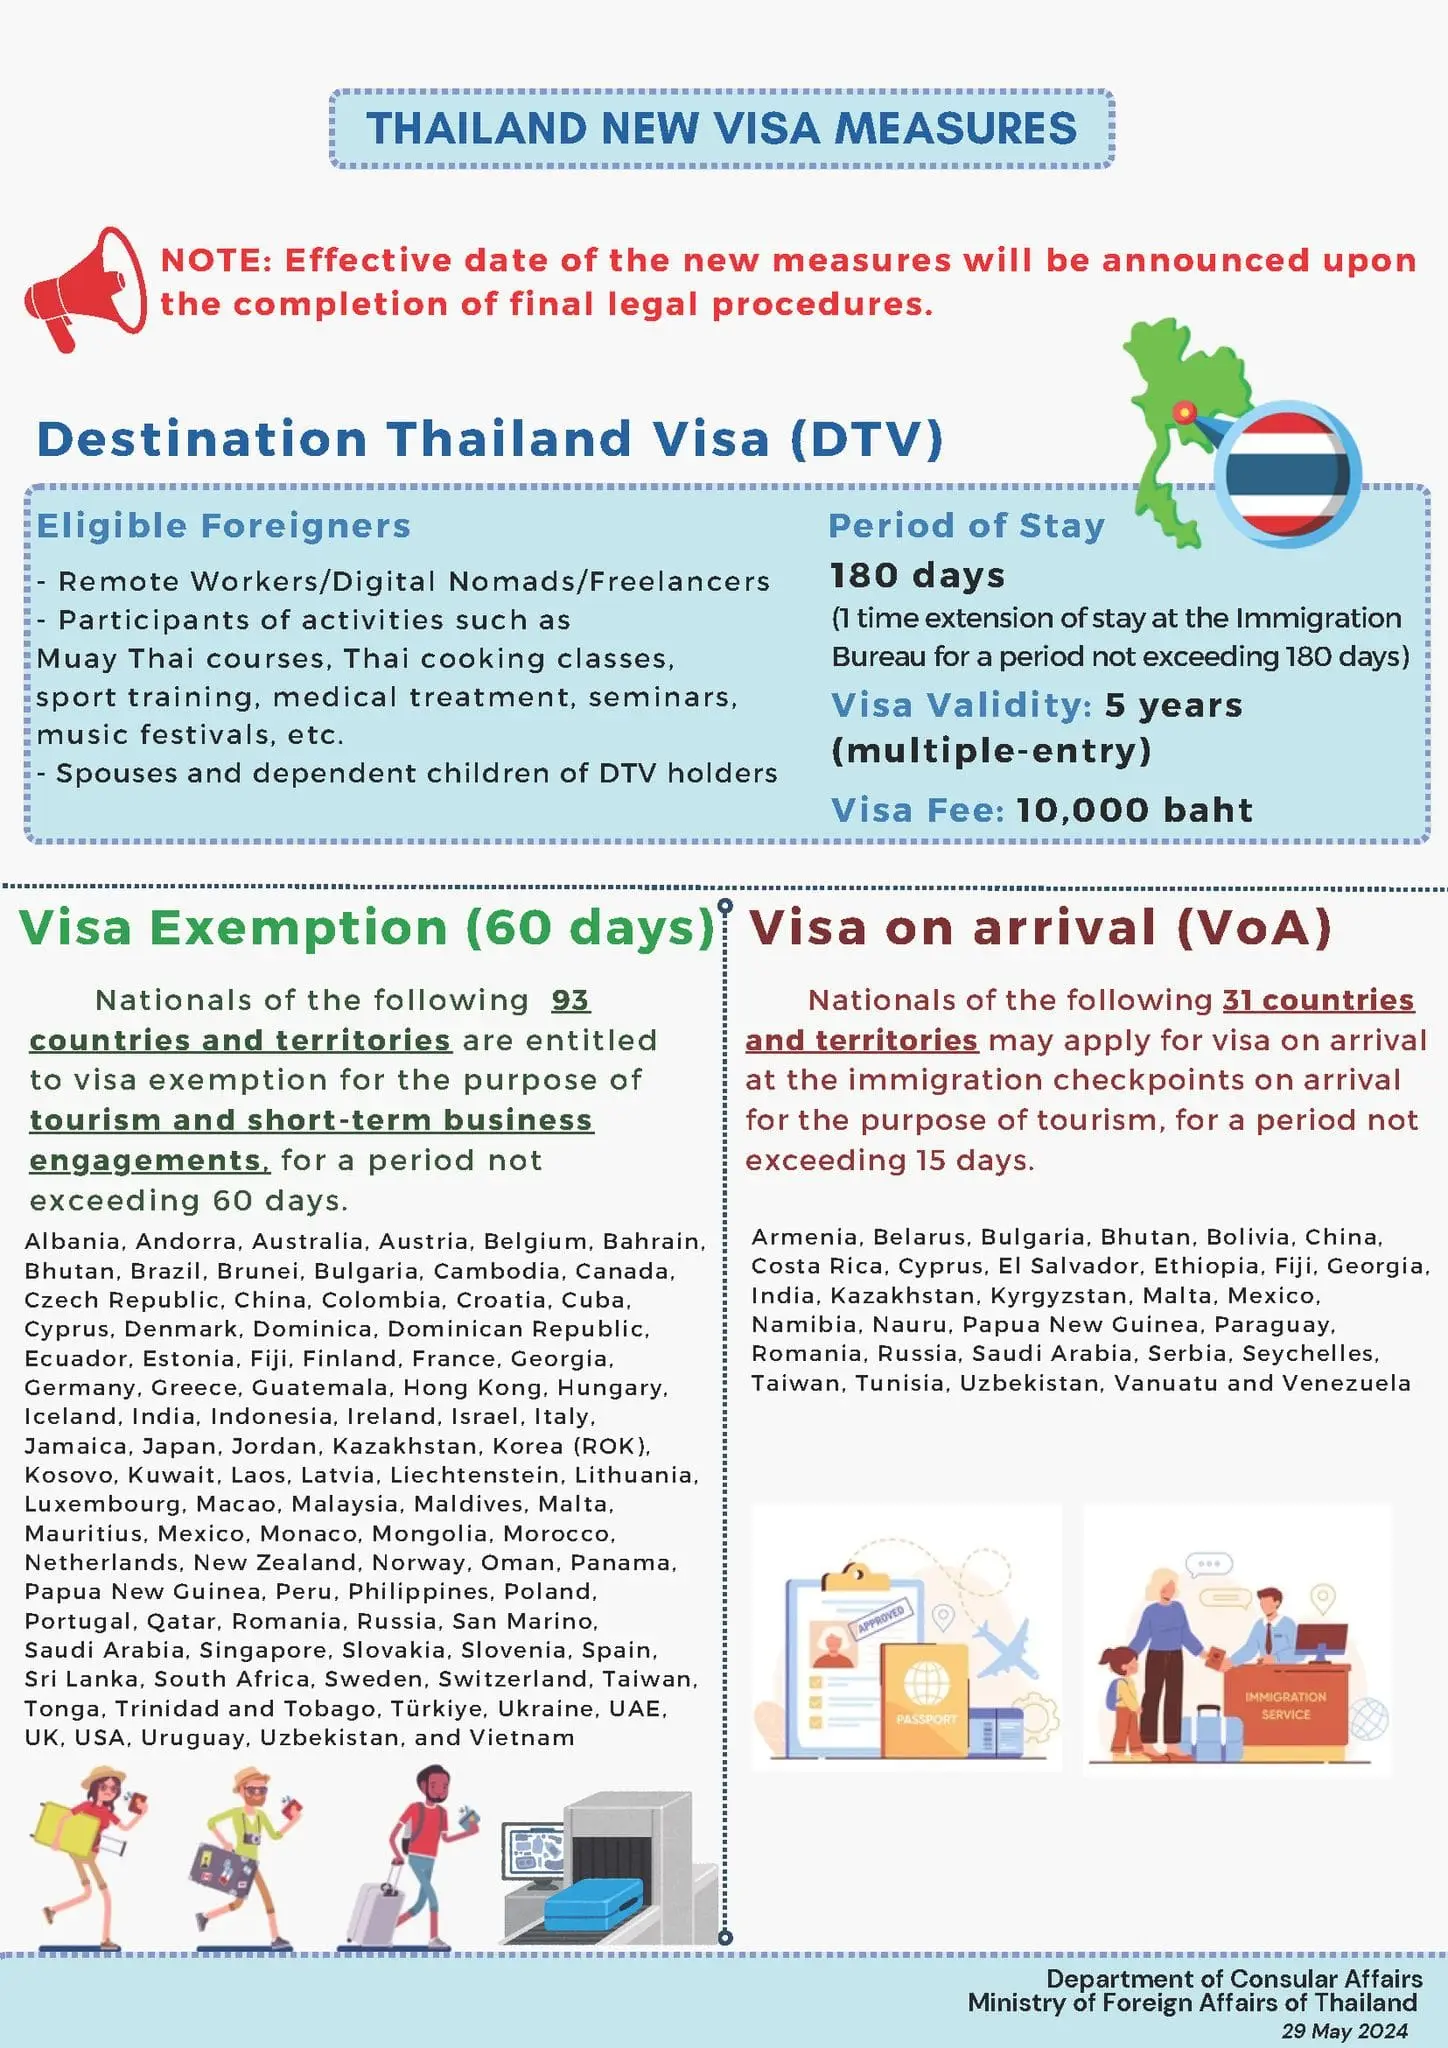 Liste des pays bénéficiant d'une exemption de visa en Thaïlande pour une durée de 60 jours et pays éligibles à l'obtention d'un visa à l'arrivée